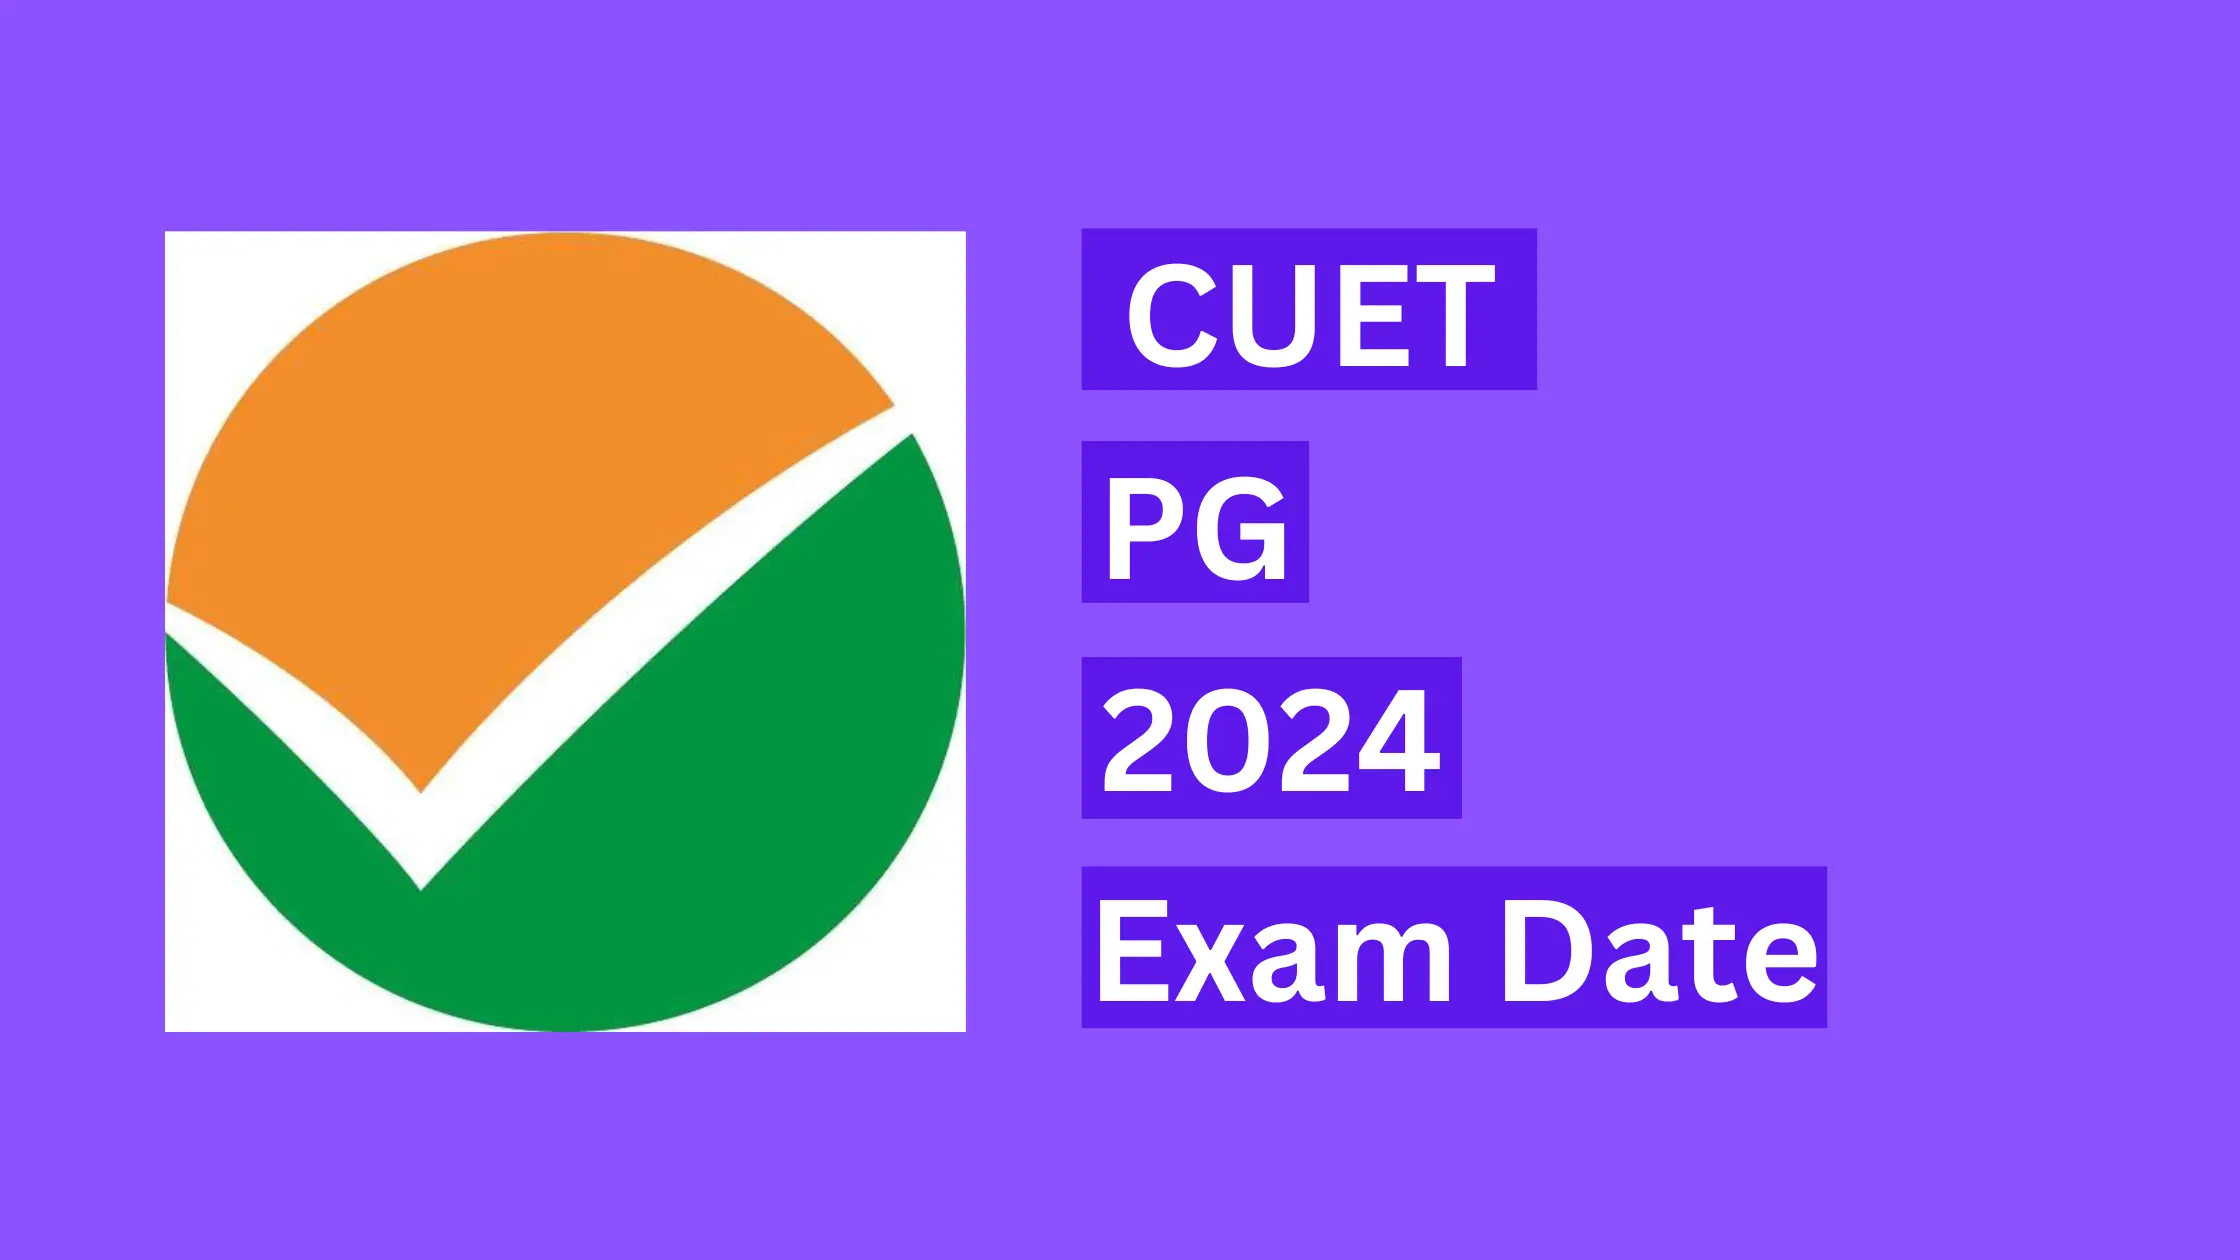 CUET PG 2024 Exam Date